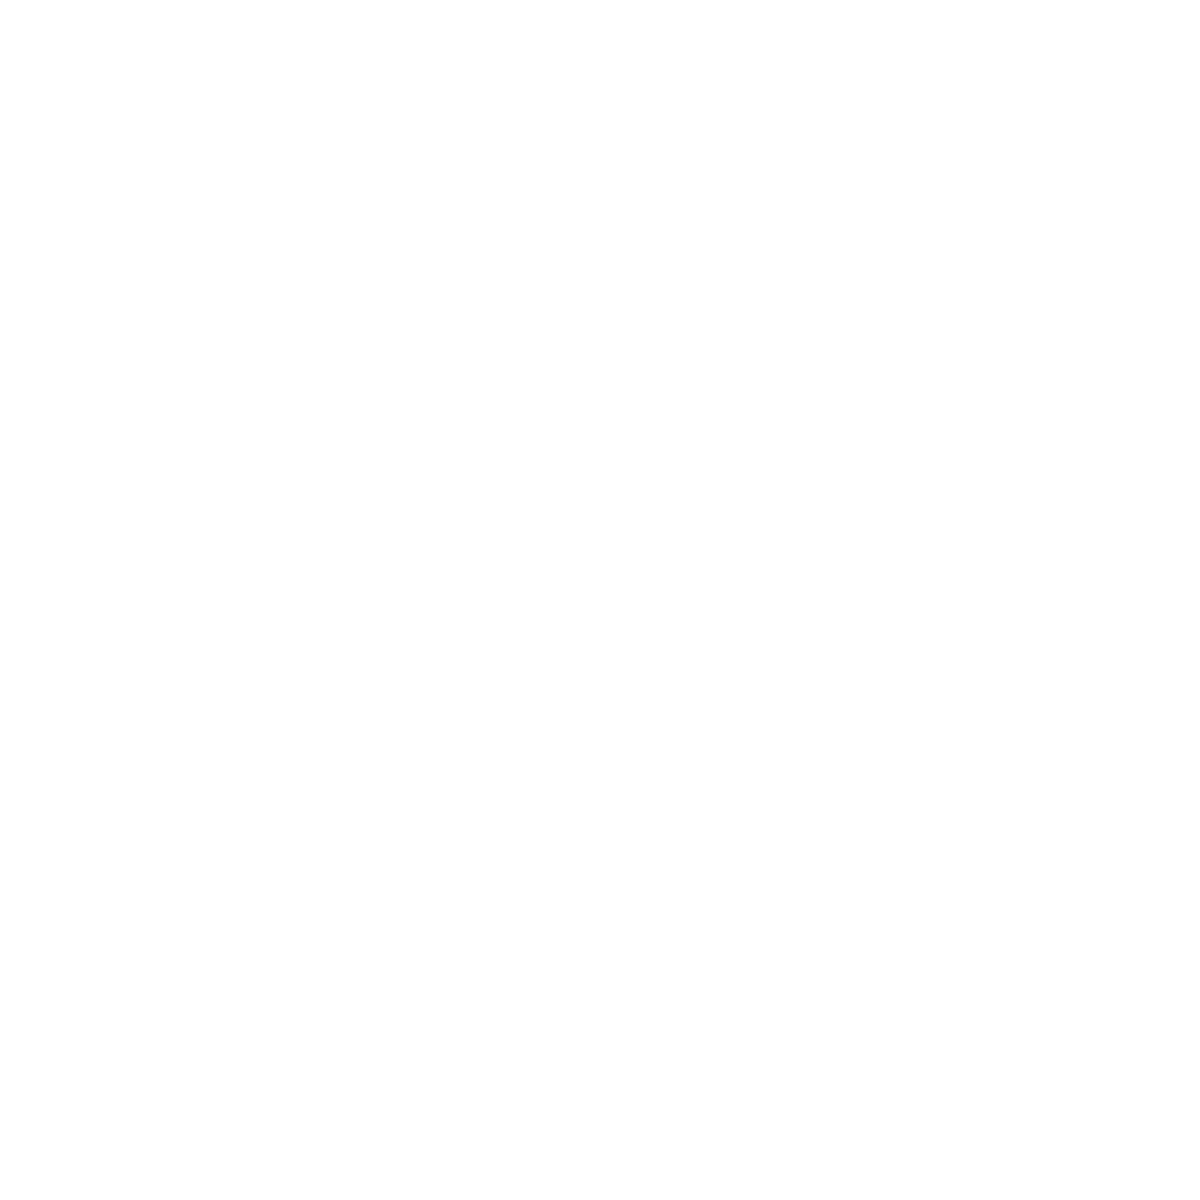 Boda Aniko logo feher